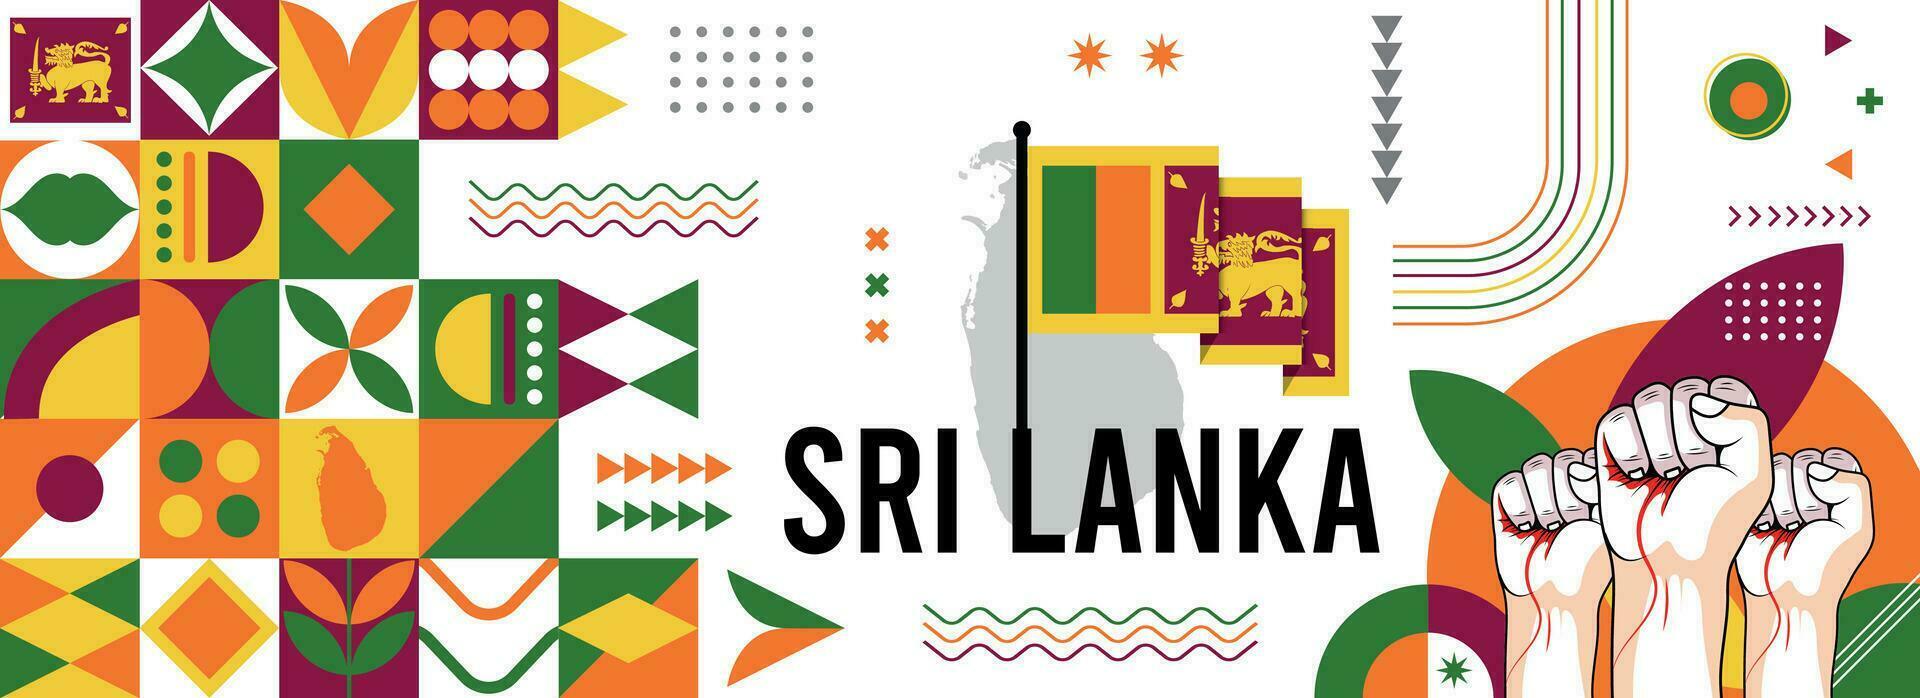 sri lanka nationale ou indépendance journée bannière conception pour pays fête. drapeau et carte de sri lanka avec élevé poings. moderne rétro conception avec abstrait géométrique Icônes. vecteur illustration.